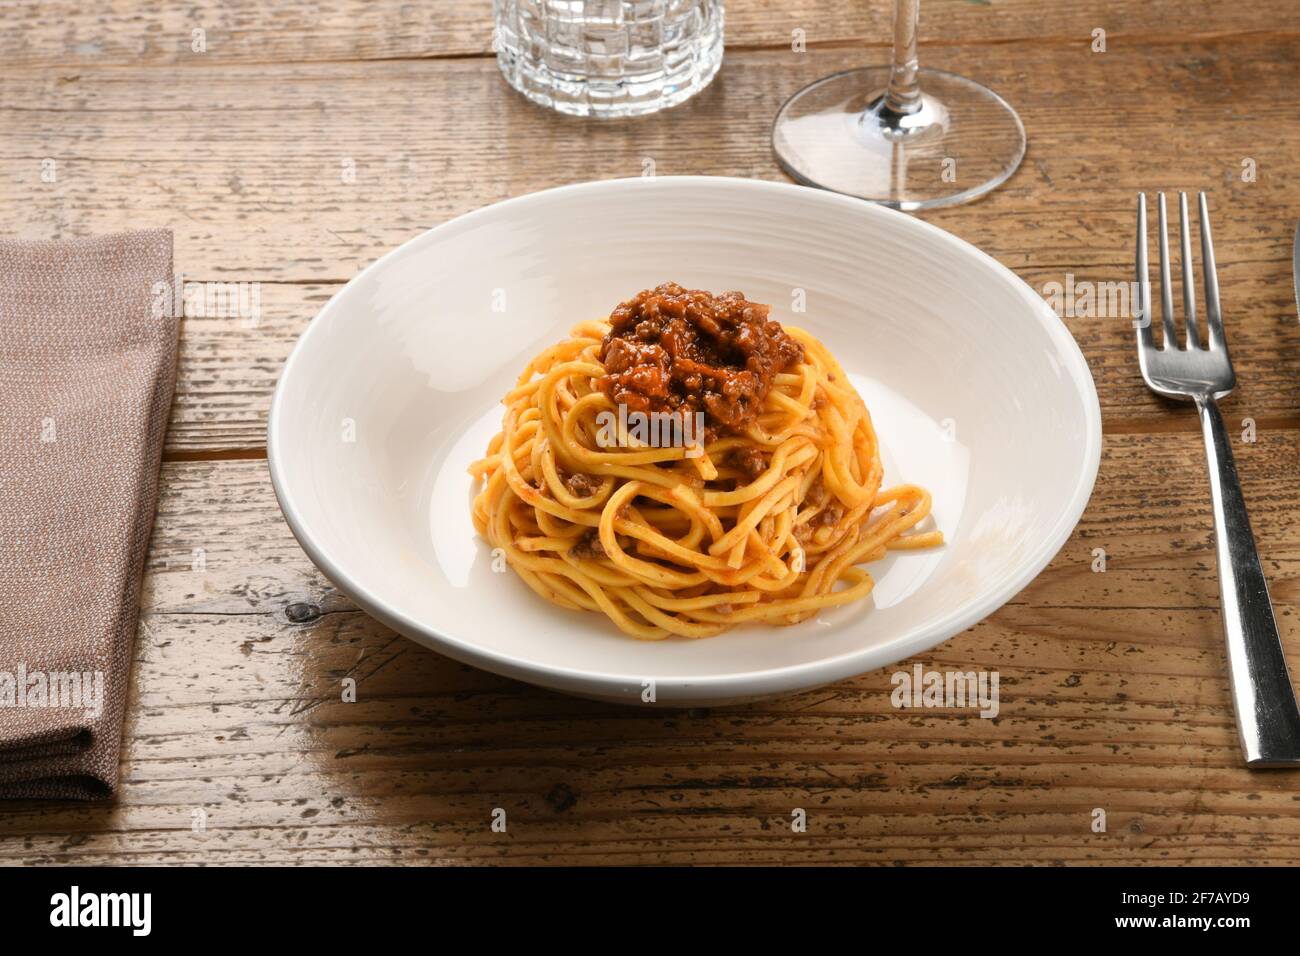 Service de ragoût de sanglier sur tagliolini ou spaghetti italien pâtes sur une table en bois avec verrerie et ustensiles un concept de spécialité régionale Banque D'Images